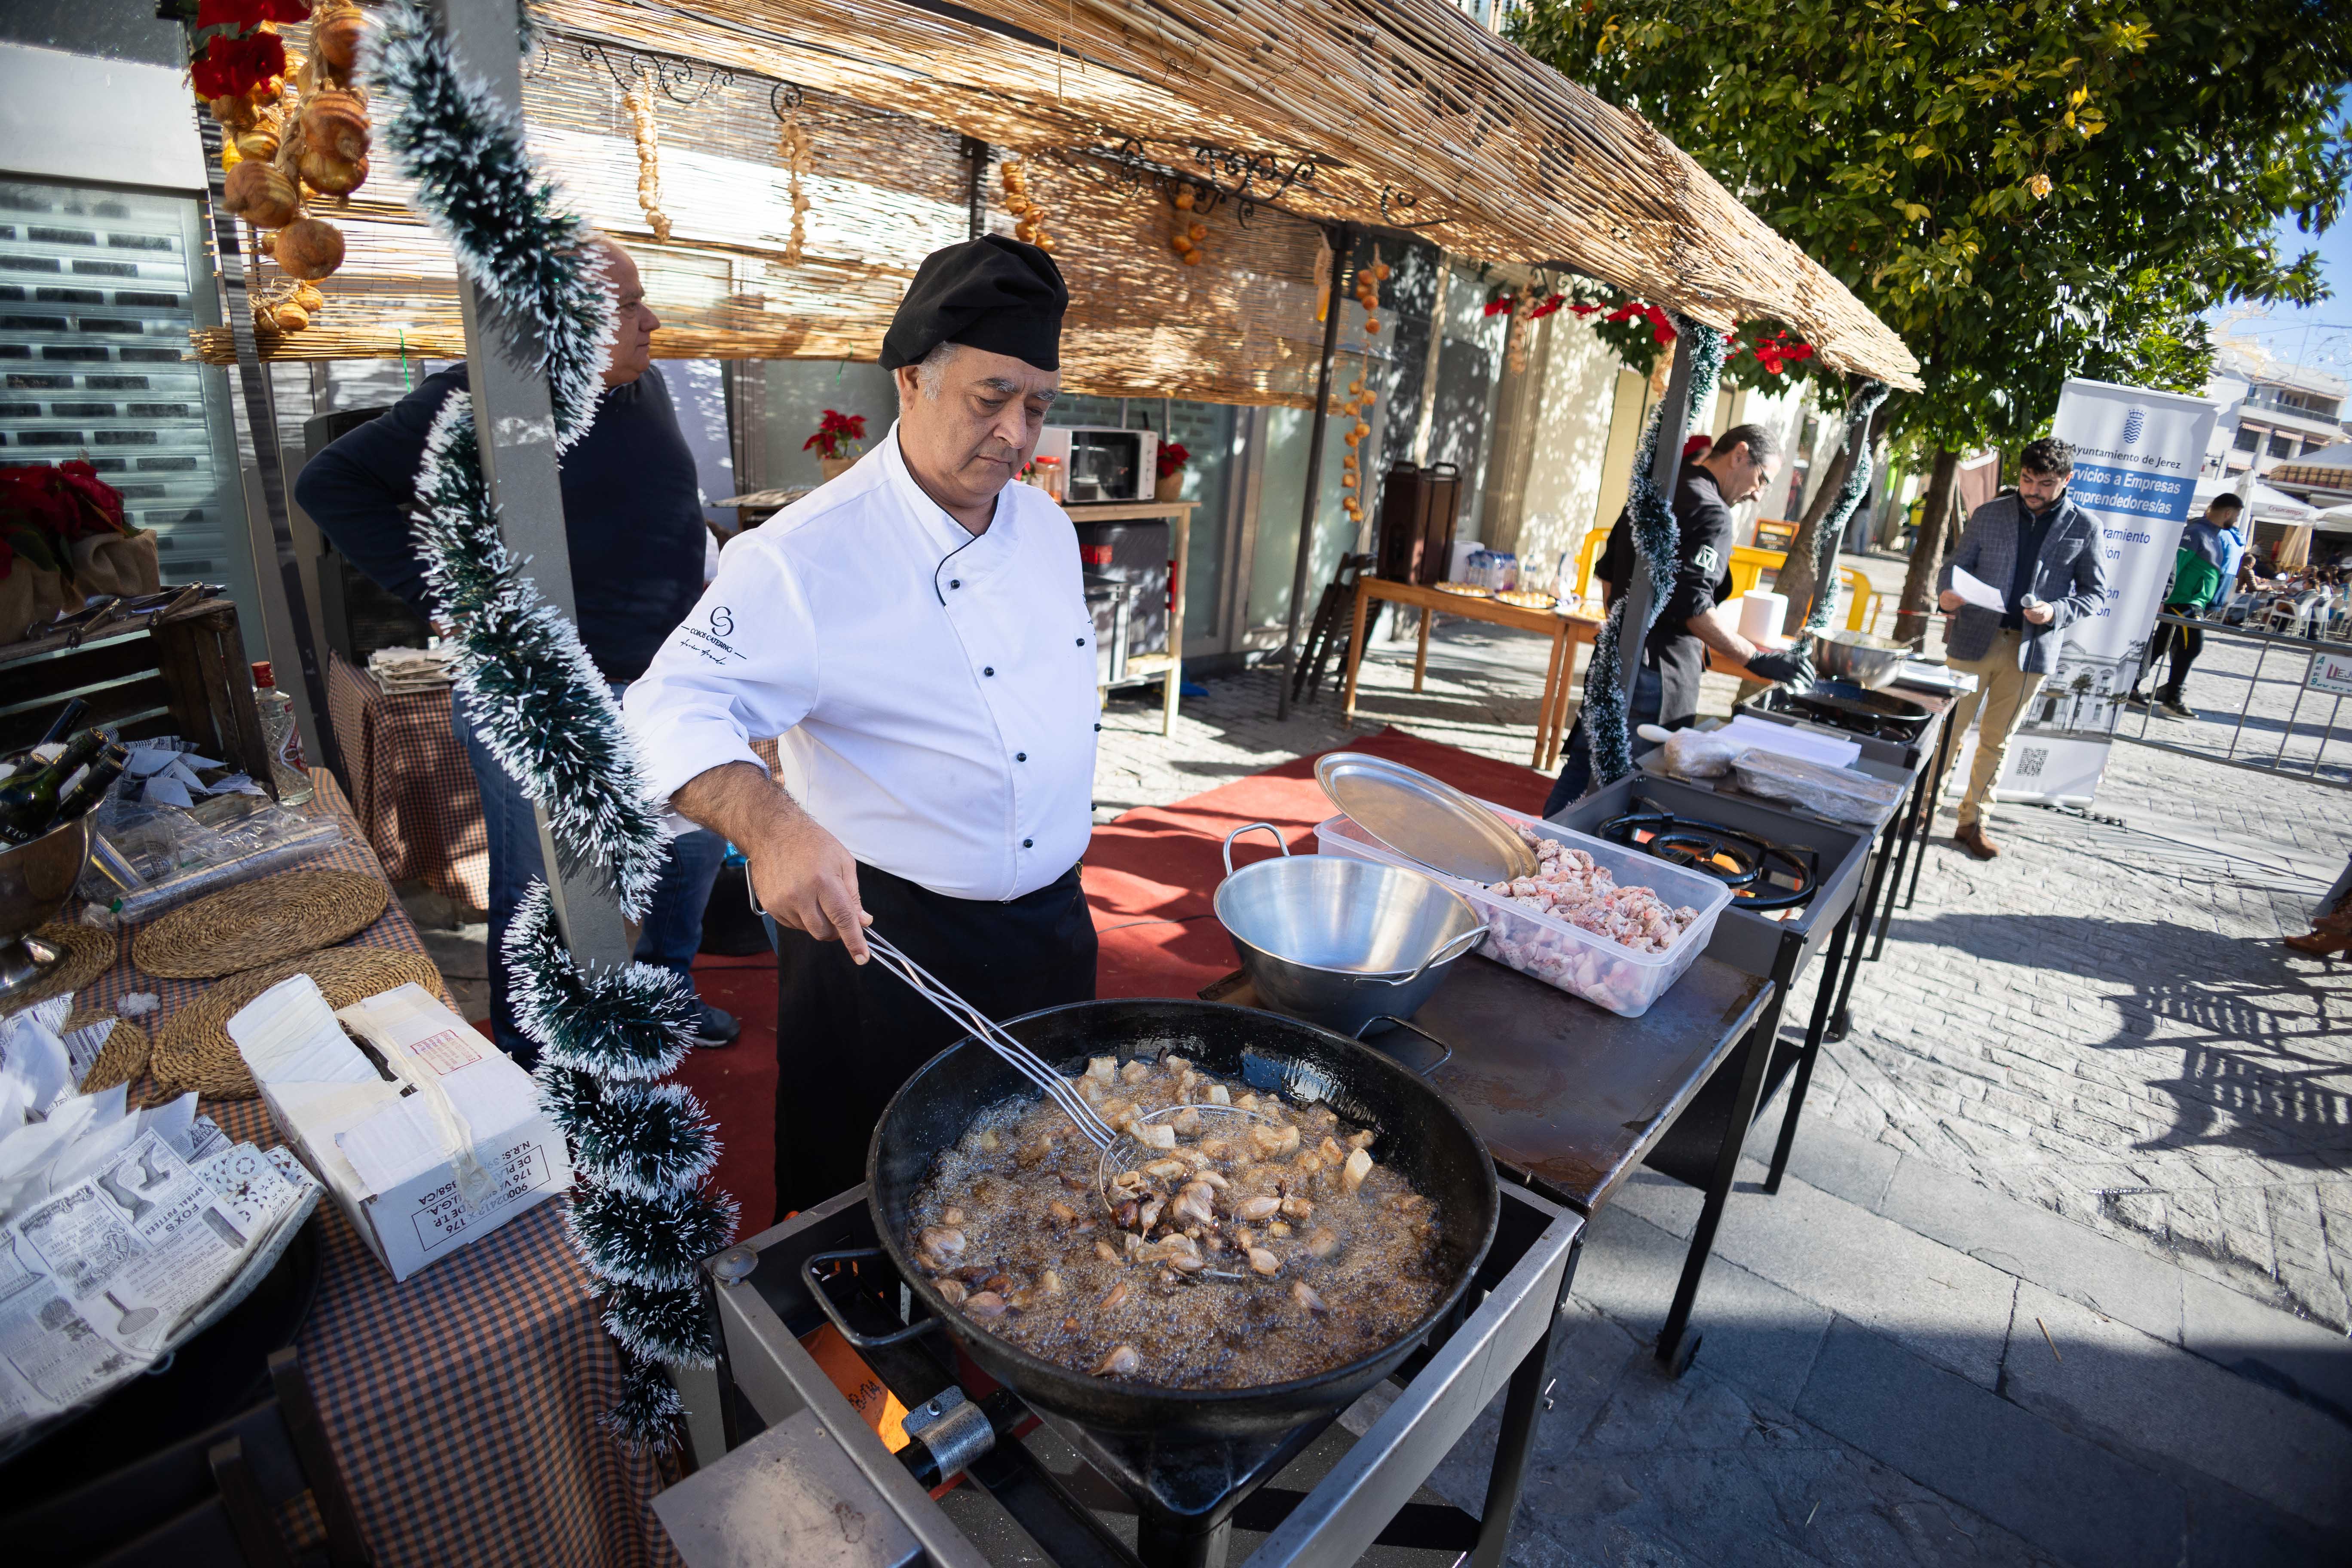 Jornada gastronómica con degustaciones junto a la Plaza de Jerez en la antesala de Nochebuena, este viernes.